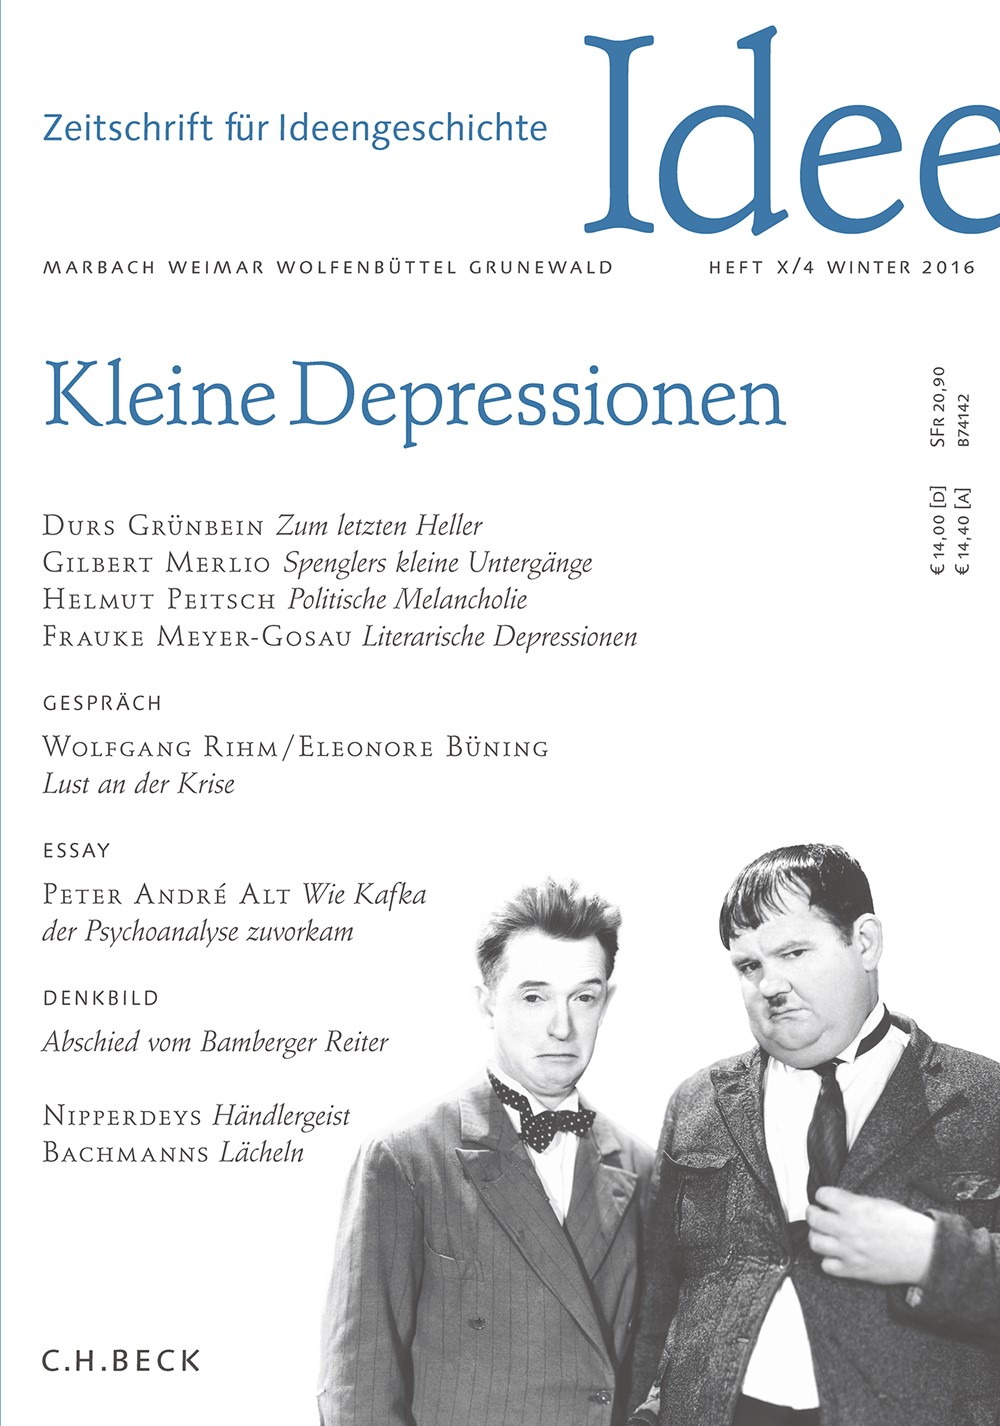 Cover von Heft X/4 Winter 2016